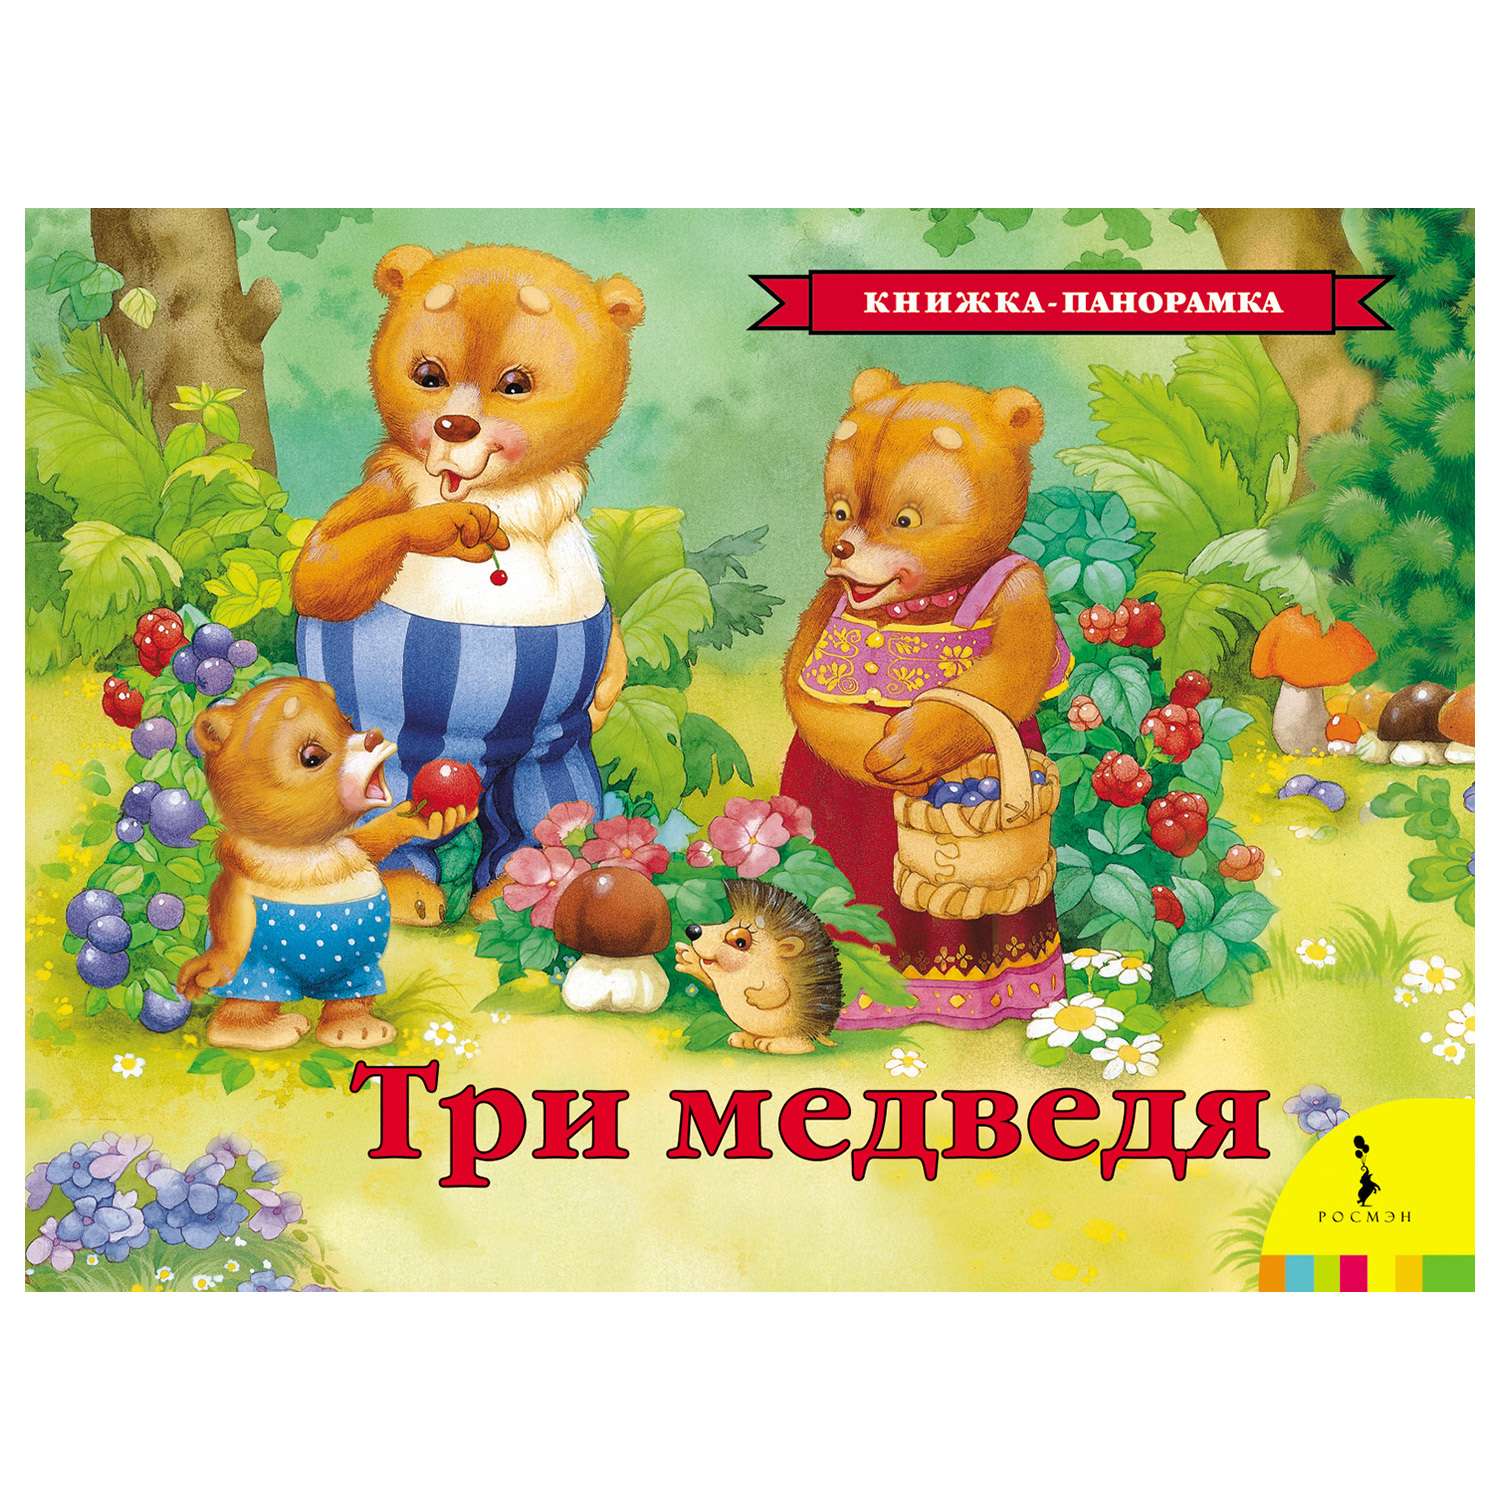 Книга Росмэн Три медведя(панорамка) - фото 1